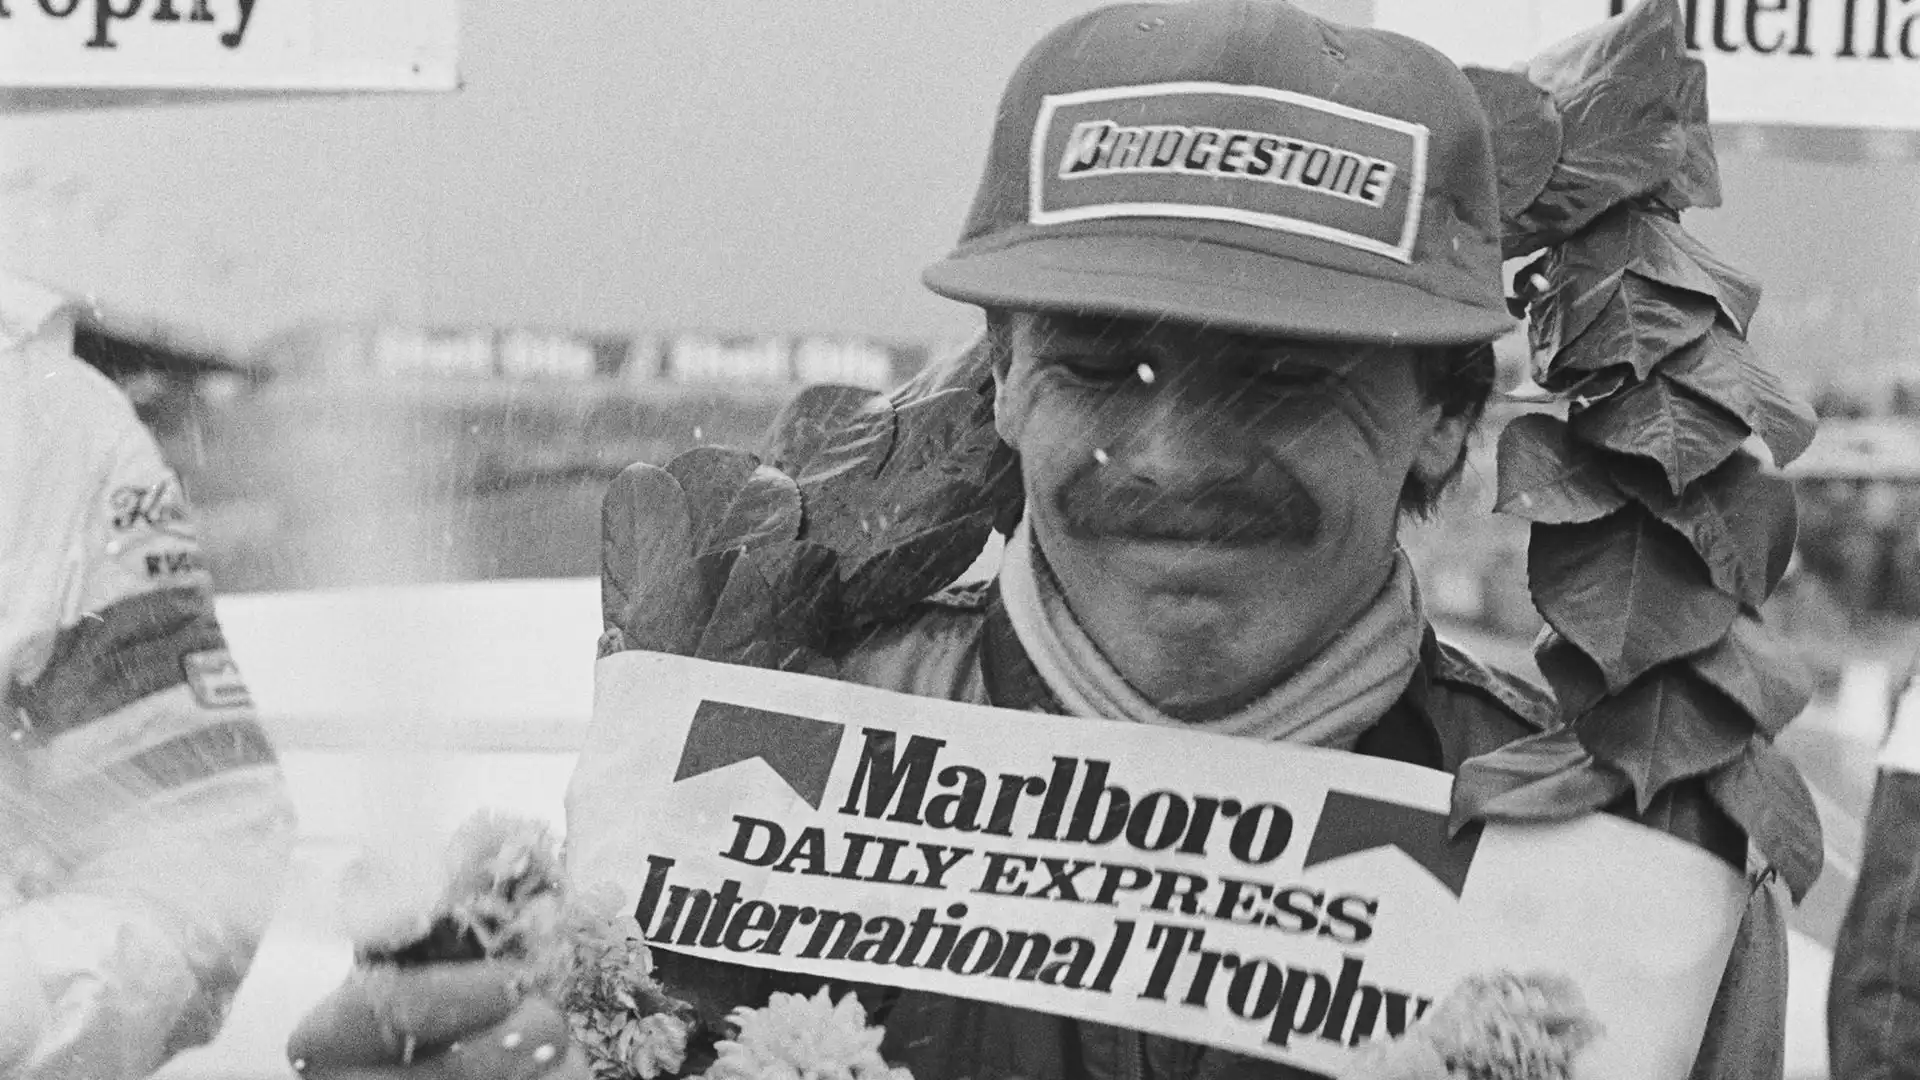 6. Mike Thackwell (19 anni, 5 mesi e 29 giorni): ha esordito nel GP del Canada 1980